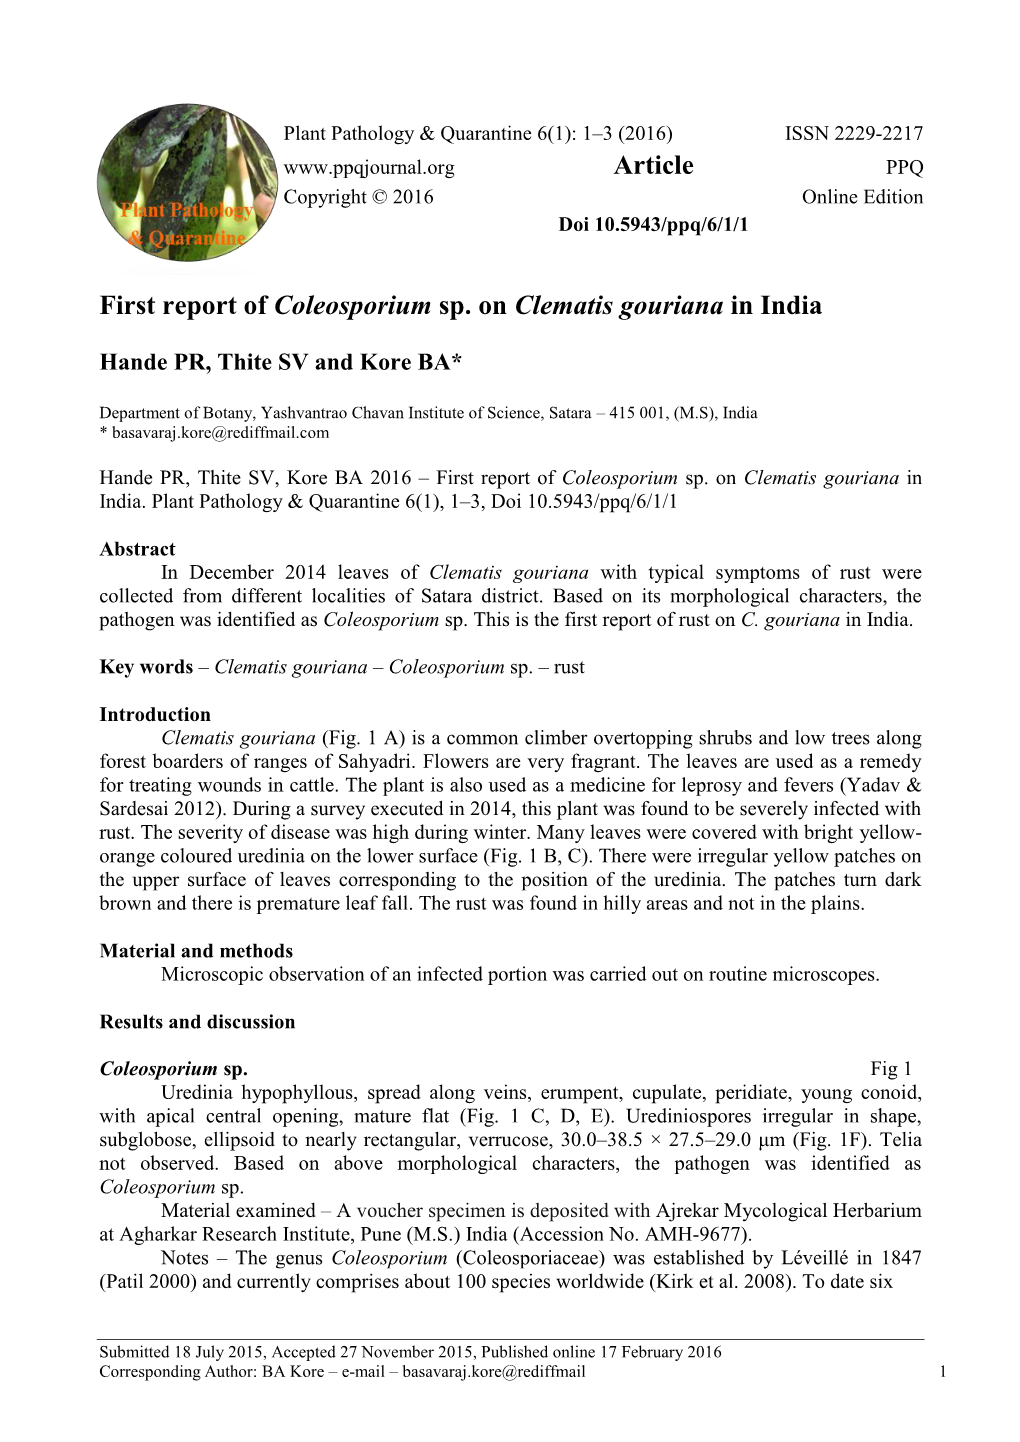 First Report of Coleosporium Sp. on Clematis Gouriana in India Article